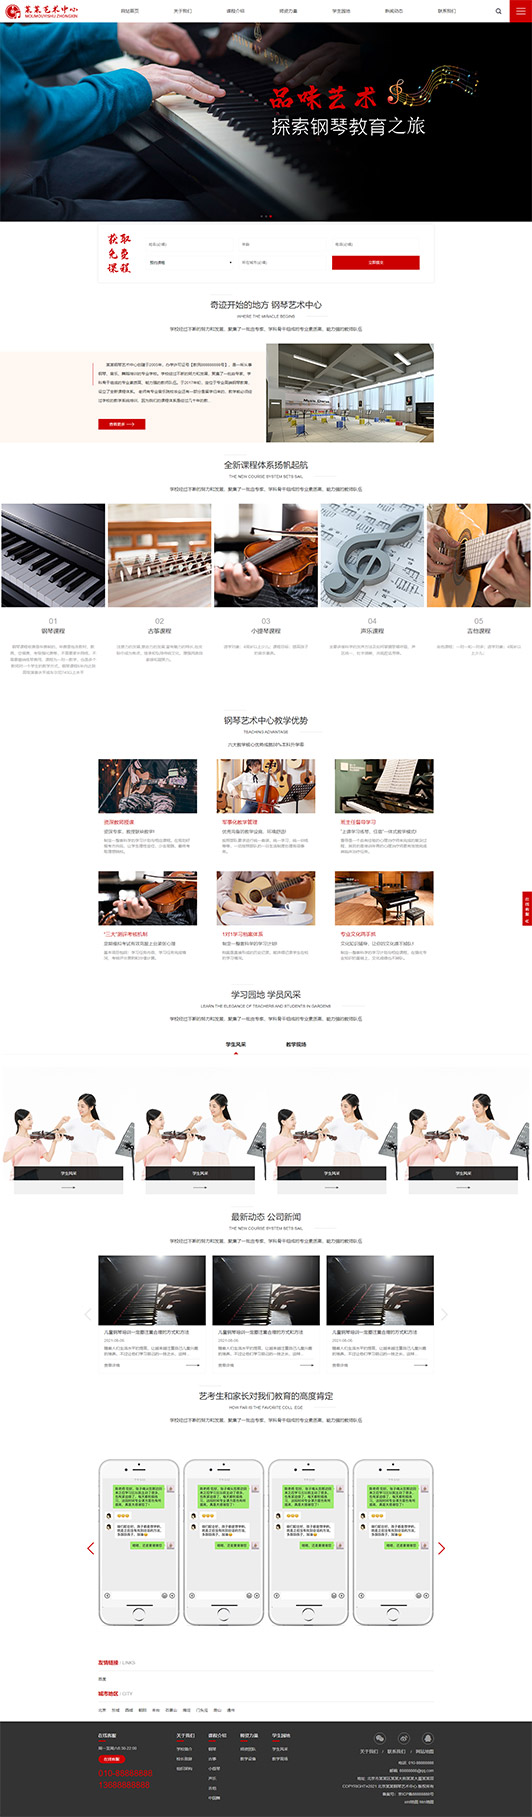 西藏钢琴艺术培训公司响应式企业网站